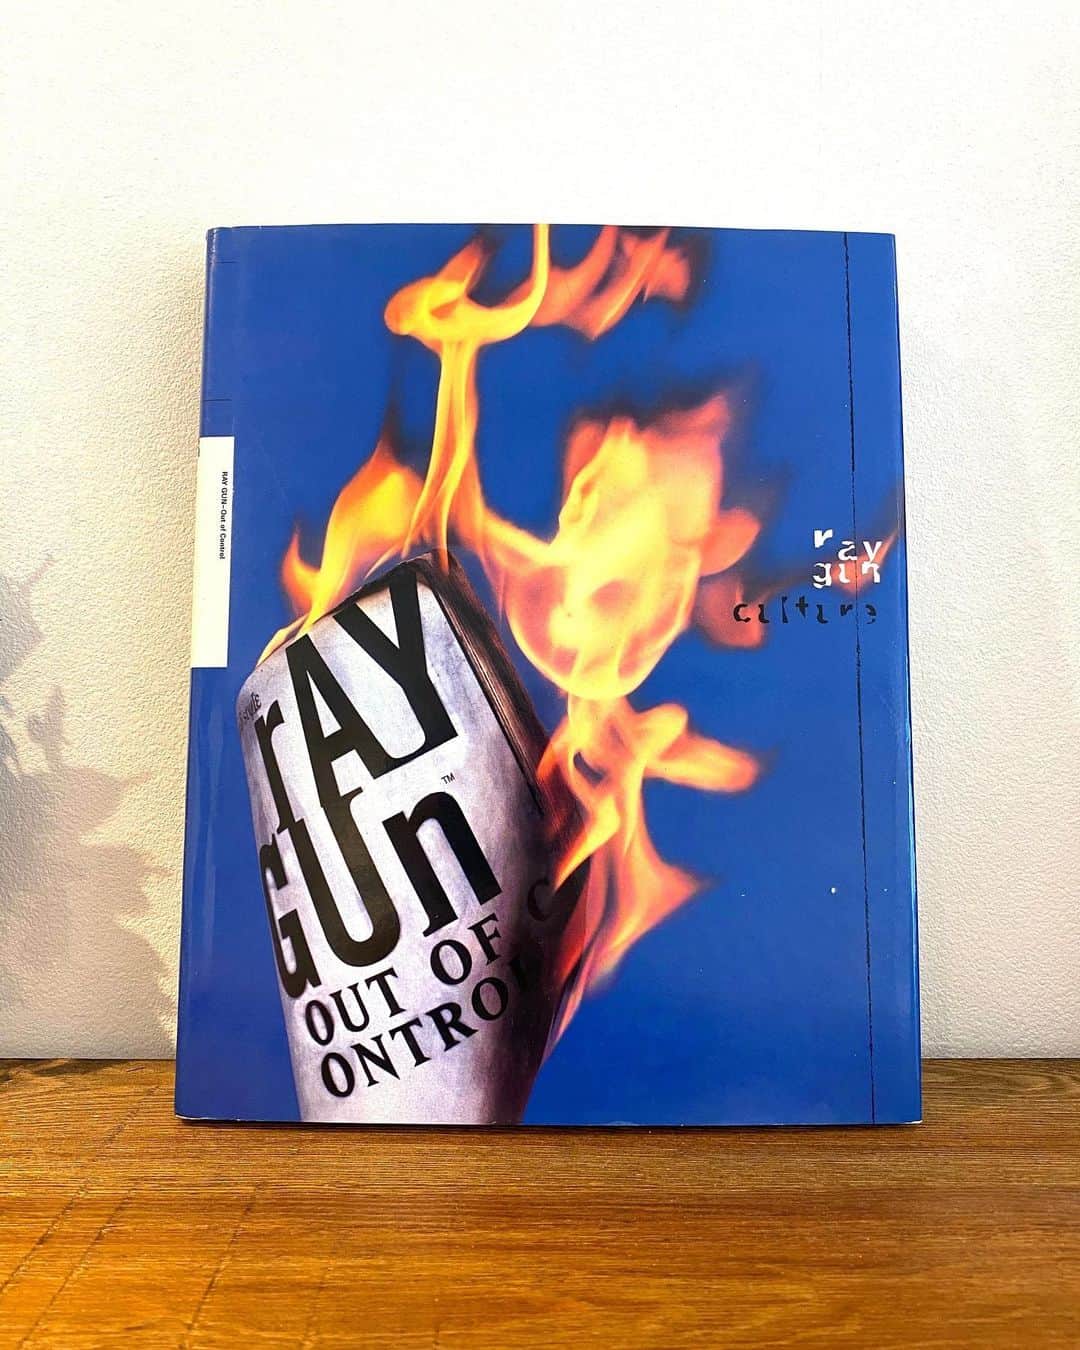 有泉智子のインスタグラム：「7daysbookcoverchallenge 。 バトンを受け取り、6日目・6冊目。  Dean Kuipers編「Ray Gun : Out of Control」  1992年〜2000年まで刊行されていたUSの音楽雑誌「Ray Gun」。初代デザイナーはDavid Carson。いまだに雑誌のデザインとして一番好き、くらいに好きな雑誌。めっっっっちゃくちゃに読みにくいけど、特にカーソン時代（笑）。Ray Gunみたいなデザインの雑誌を作りたいなと常に思ってて、でもなかなかできないんだよな。こういうデザインをデザイナーにやってもらうには、まず今の編集進行体制を抜本的に変えないと無理。でもいつかこういう雑誌を作りたい。まず判型変えたい（←そういうことじゃない）。 で、この本は、その「Ray Gun」のデザイン・アーカイヴみたいなもの。単純なレイアウト再掲ではなく編集されてるし作り込まれてる。 ちなみにこのカバーは全然Ray Gunぽくない（と私は思うんですが、どうですか）。なんでこのカバーだったんだろう…。でも中身はRay Gunです。 . . . 【7日間ブックカバーチャレンジ／7days book cover challenge】 読書文学の普及に貢献する為のチャレンジで、好きな本を1日1冊、7日間投稿。本についての説明は必要なく、表紙画像のみアップ。その都度1人の友人を招待し、バトンをつなぐというルール。  なのですが、勝手にルール変えさせていただきまして、私はどなたにもバトンは渡しません。これを見て自分もアップしてみたい！という方は、ご自由に繋いでください。  #7daysbookcoverchallenge #7bookcover」